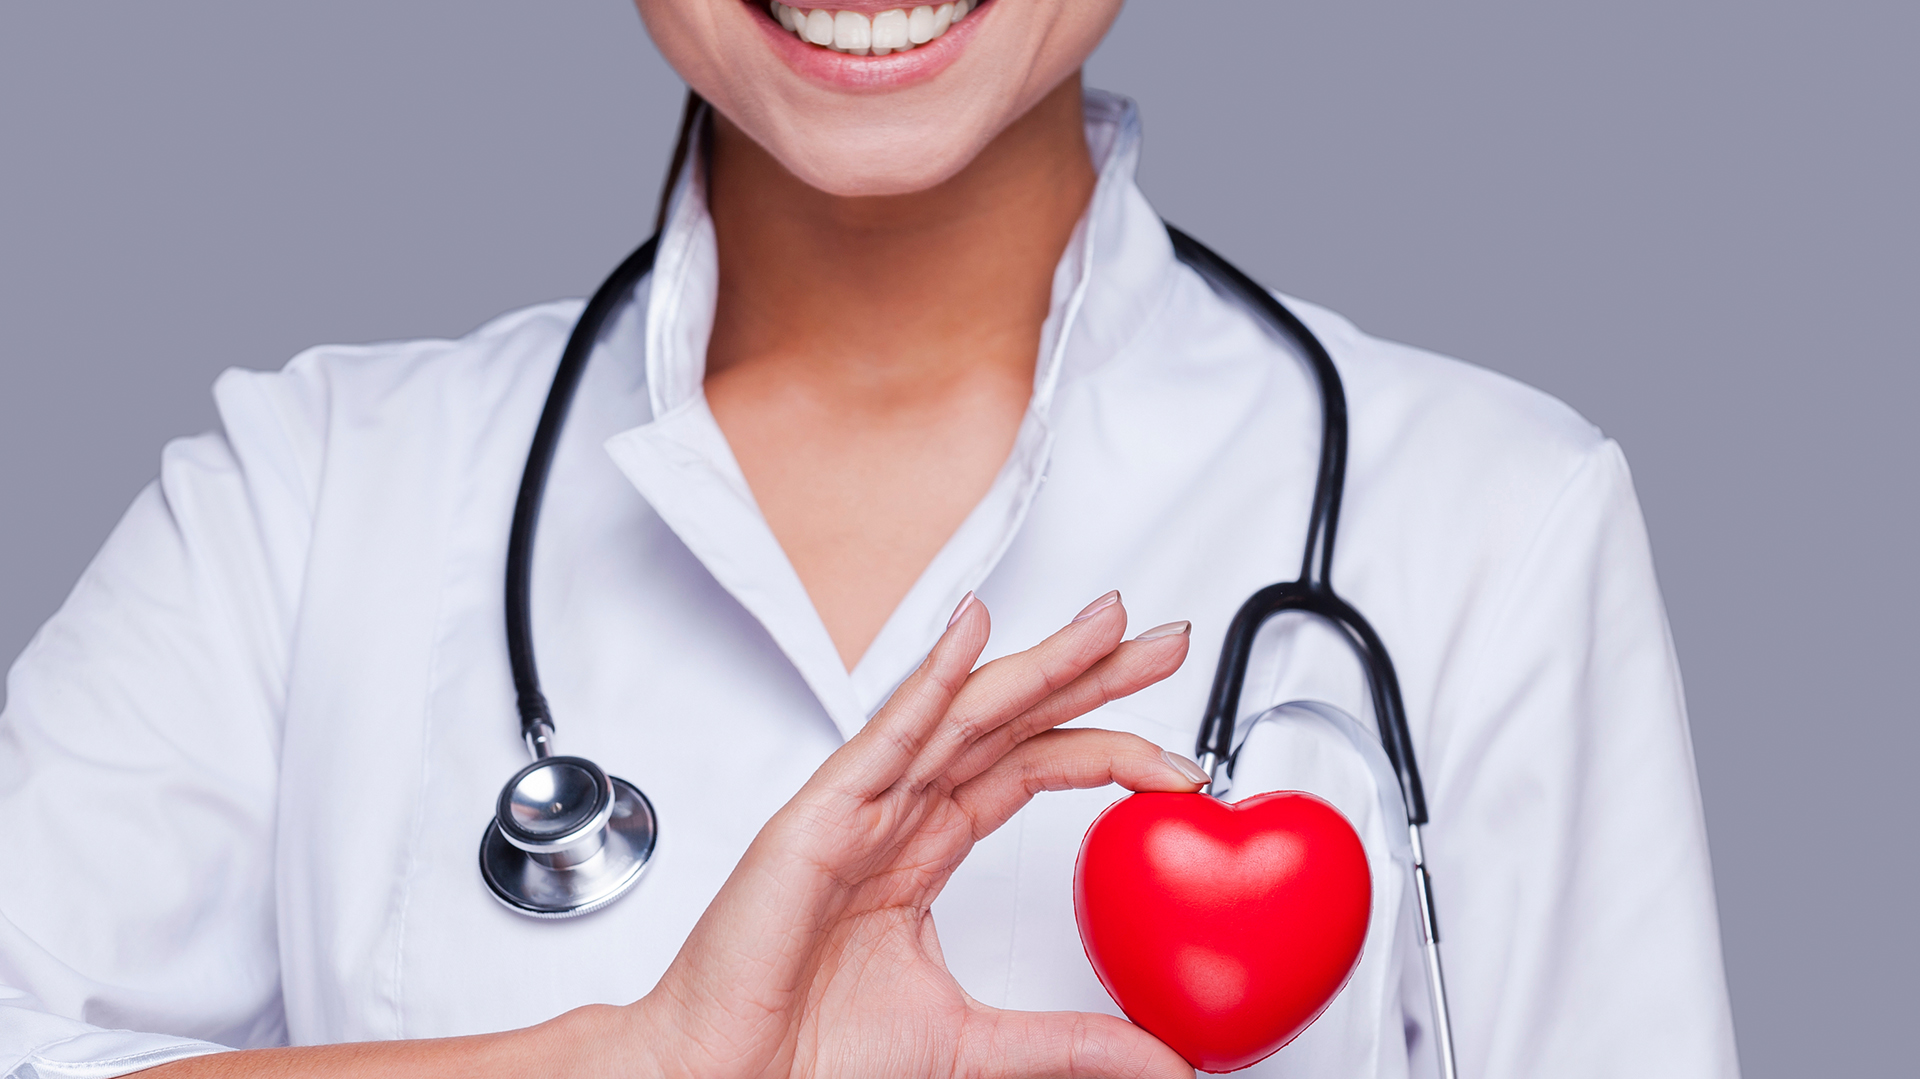 Los médicos recomiendan un chequeo integral de la salud y hacer foco en el corazón (Istock)